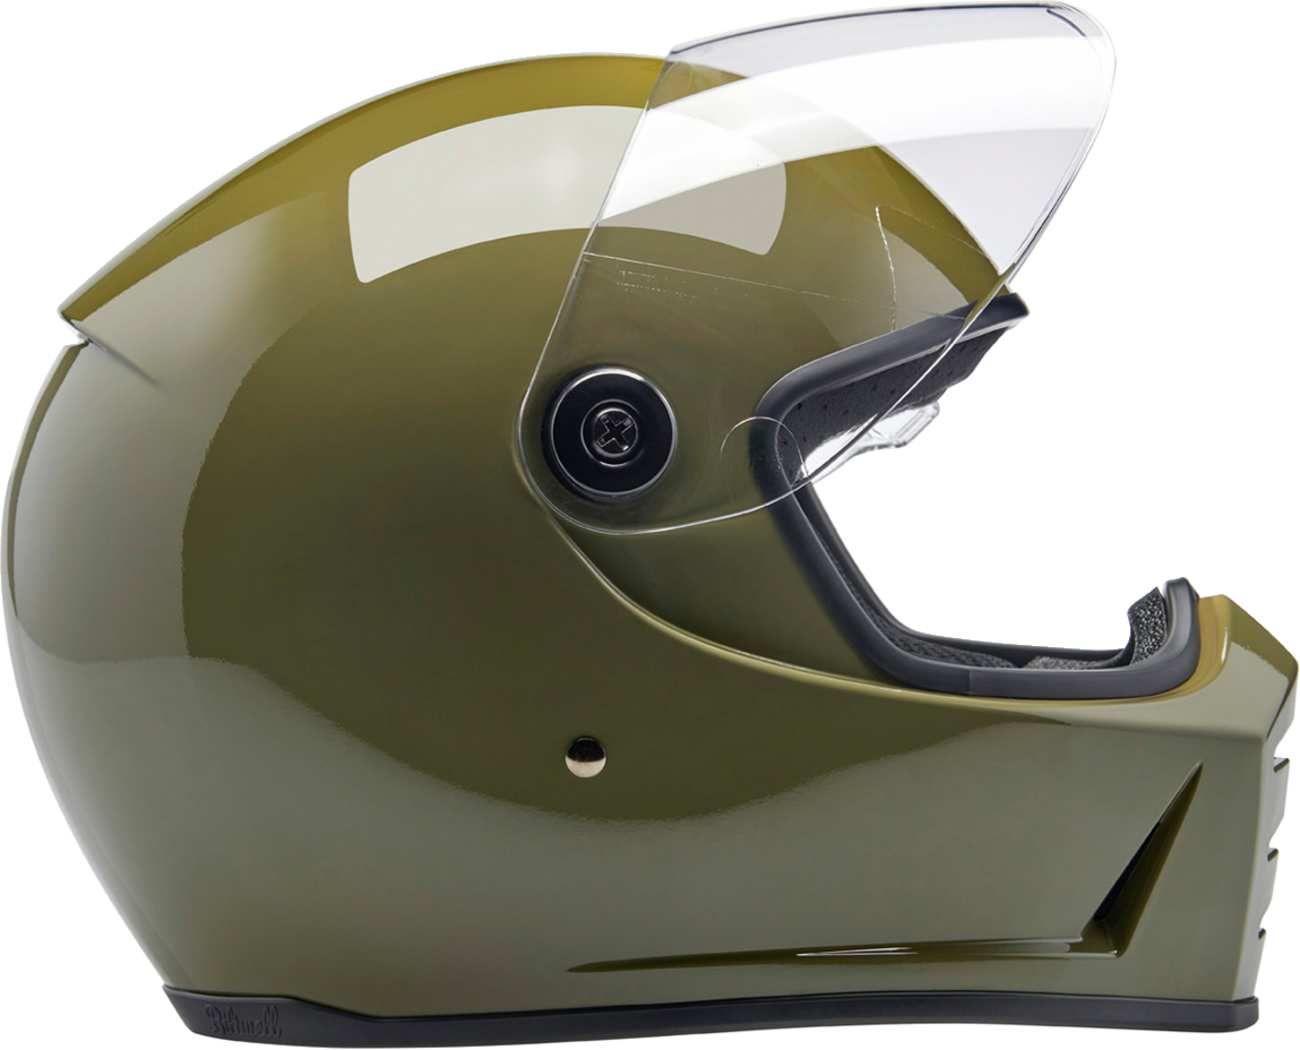 BILTWELL Lane Splitter Helmet - Gloss Olive Green - XS 1004-154-501